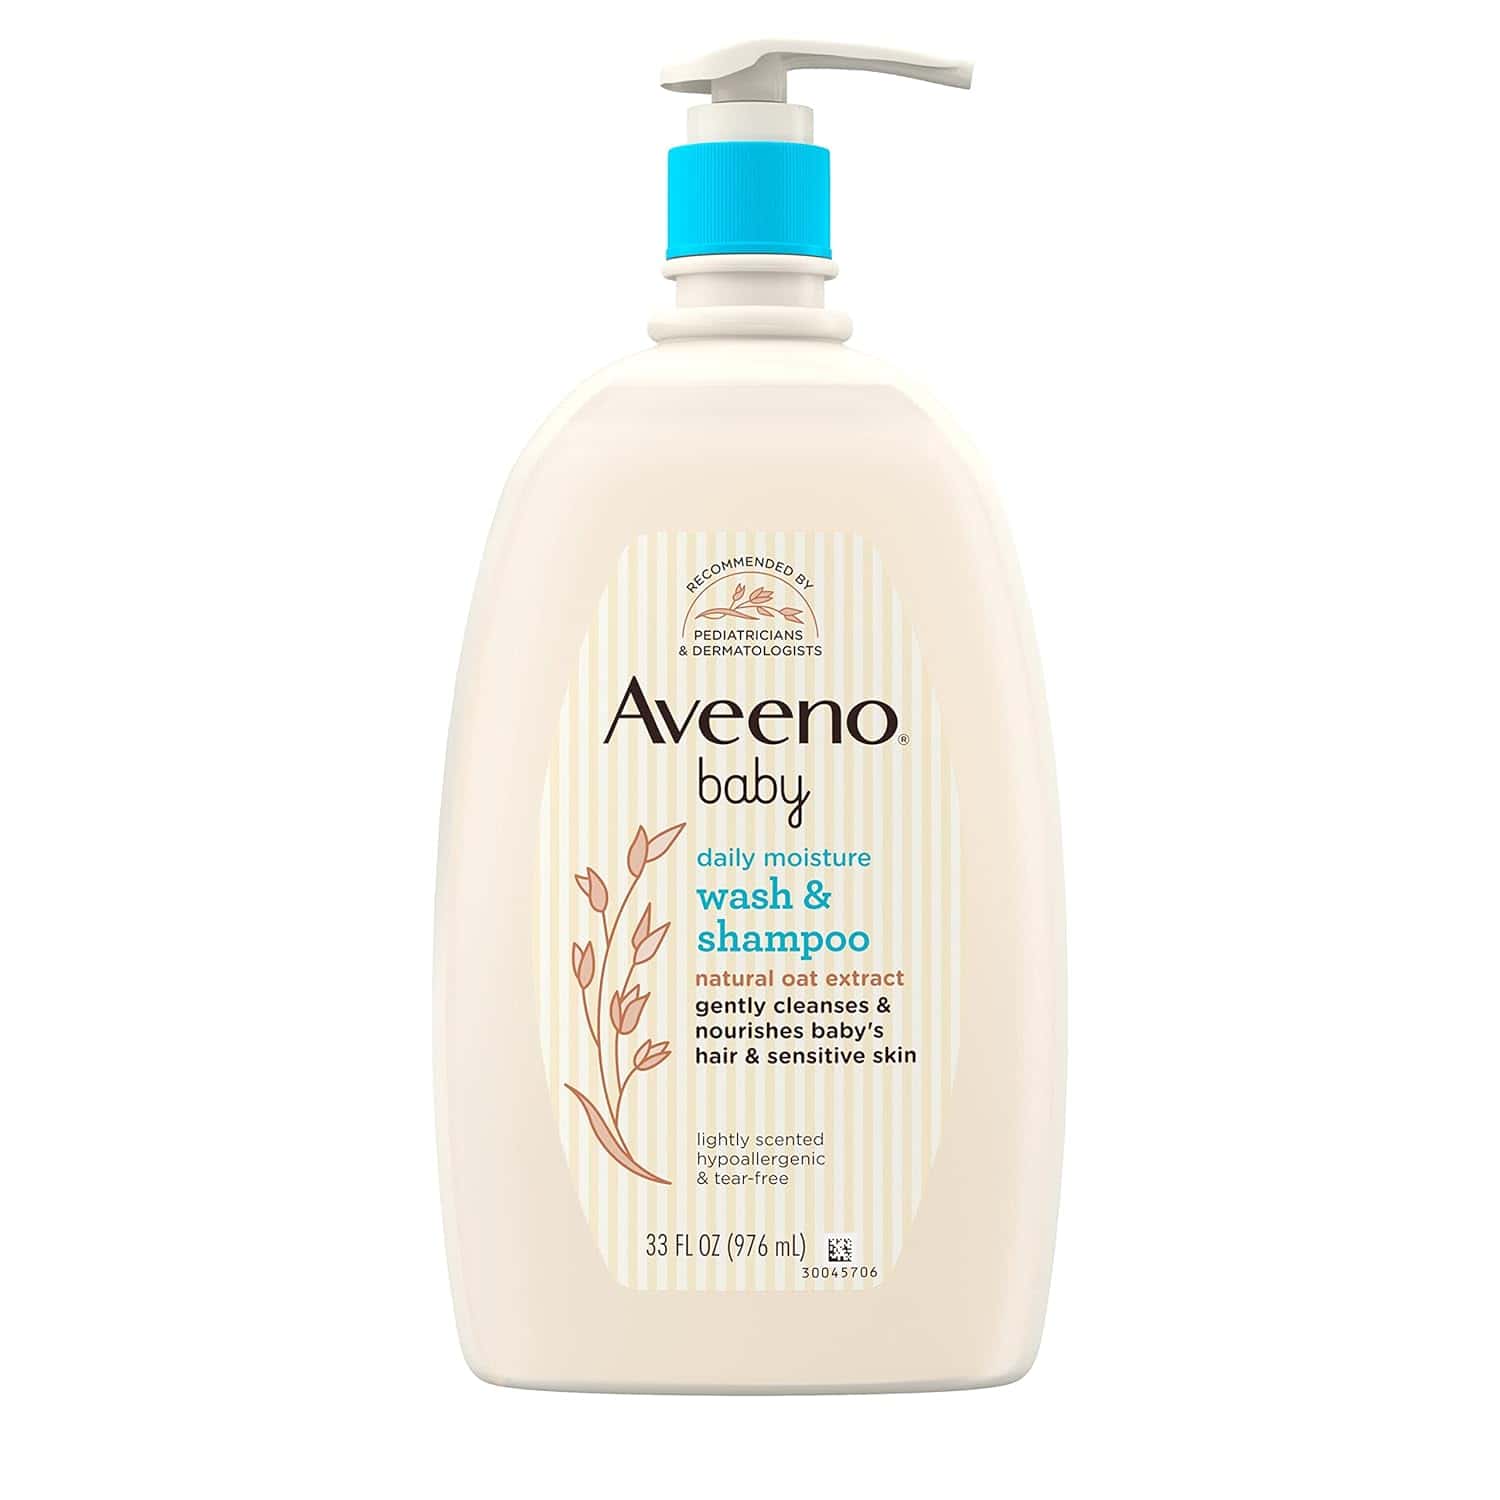 Aveeno's Baby Daily Moisture Gentle Bath Wash & Shampoo